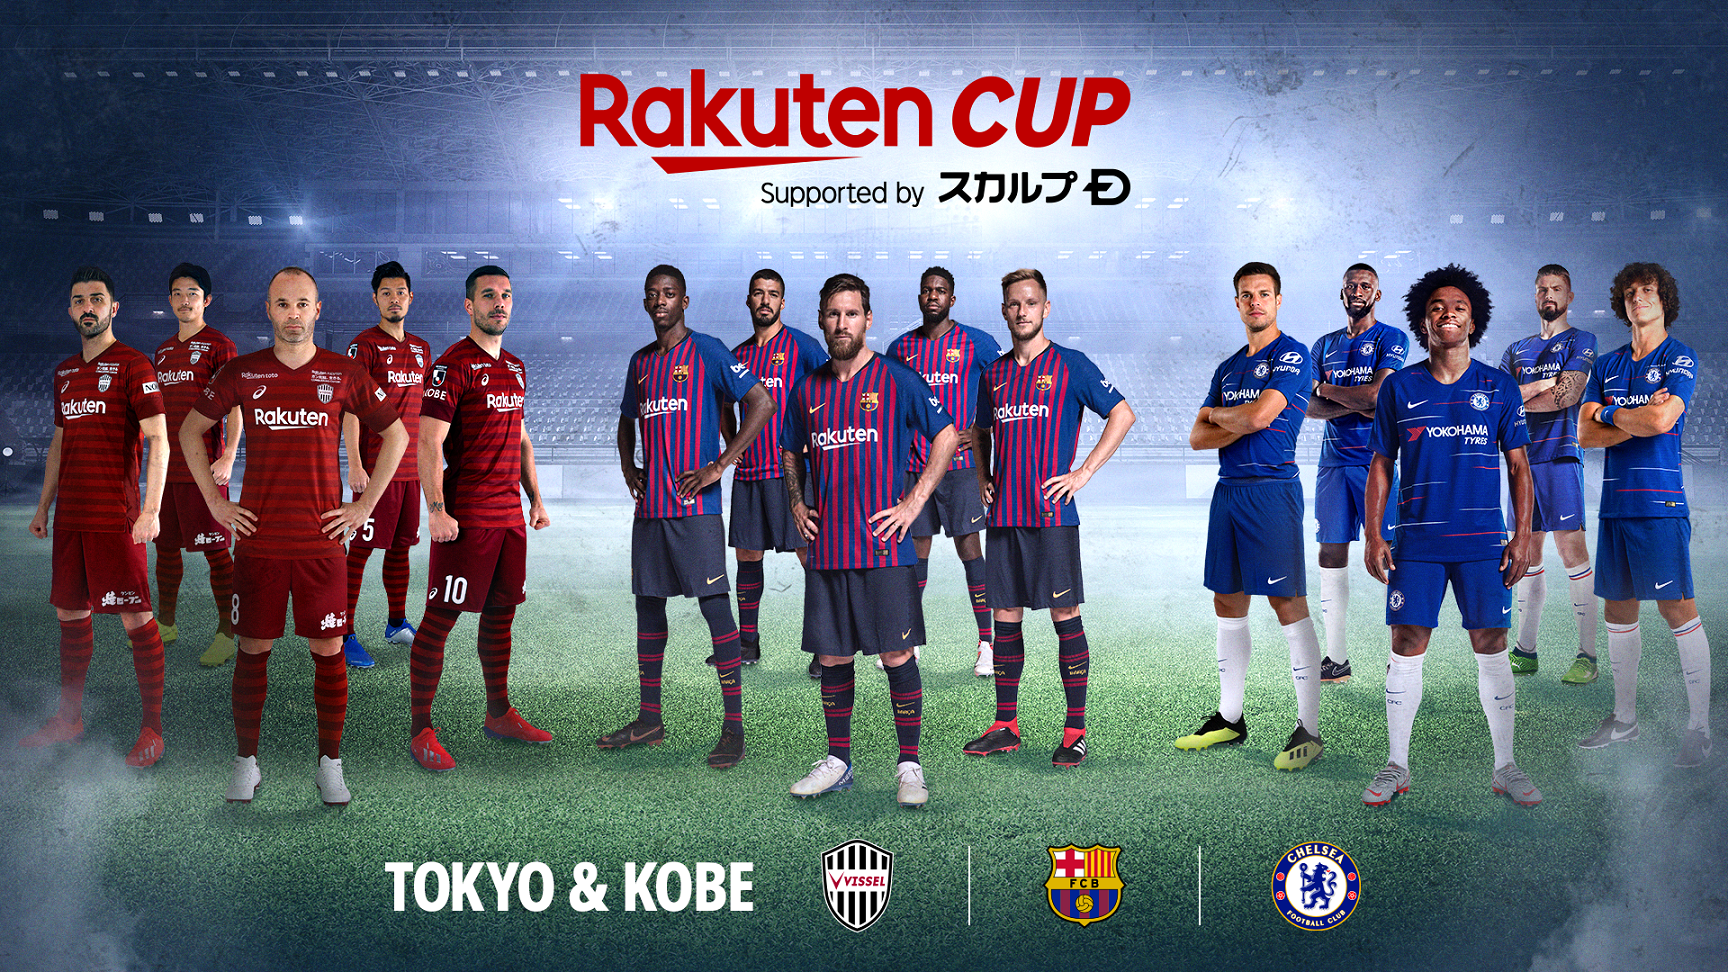 楽天 動画配信サービス Rakuten Tv と Rakuten Sports において 7月に開催される Rakuten Cup のライブ配信を決定 楽天株式会社のプレスリリース